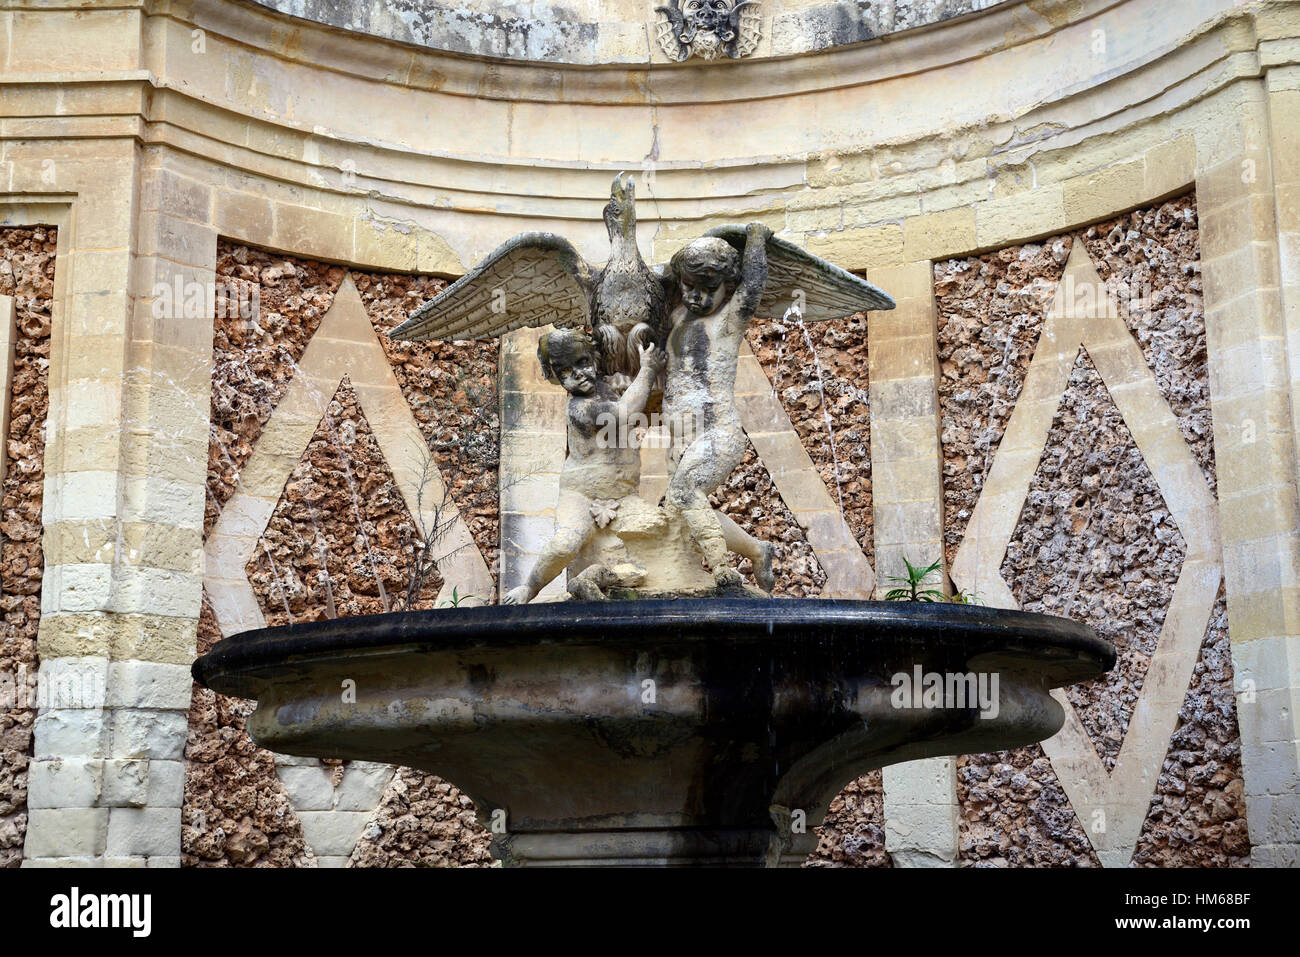 komplizierte verzierten Brunnen Wasserteich San Anton Gärten Presidential Palace Attard Malta öffentlichen RM Gartenwelt Stockfoto